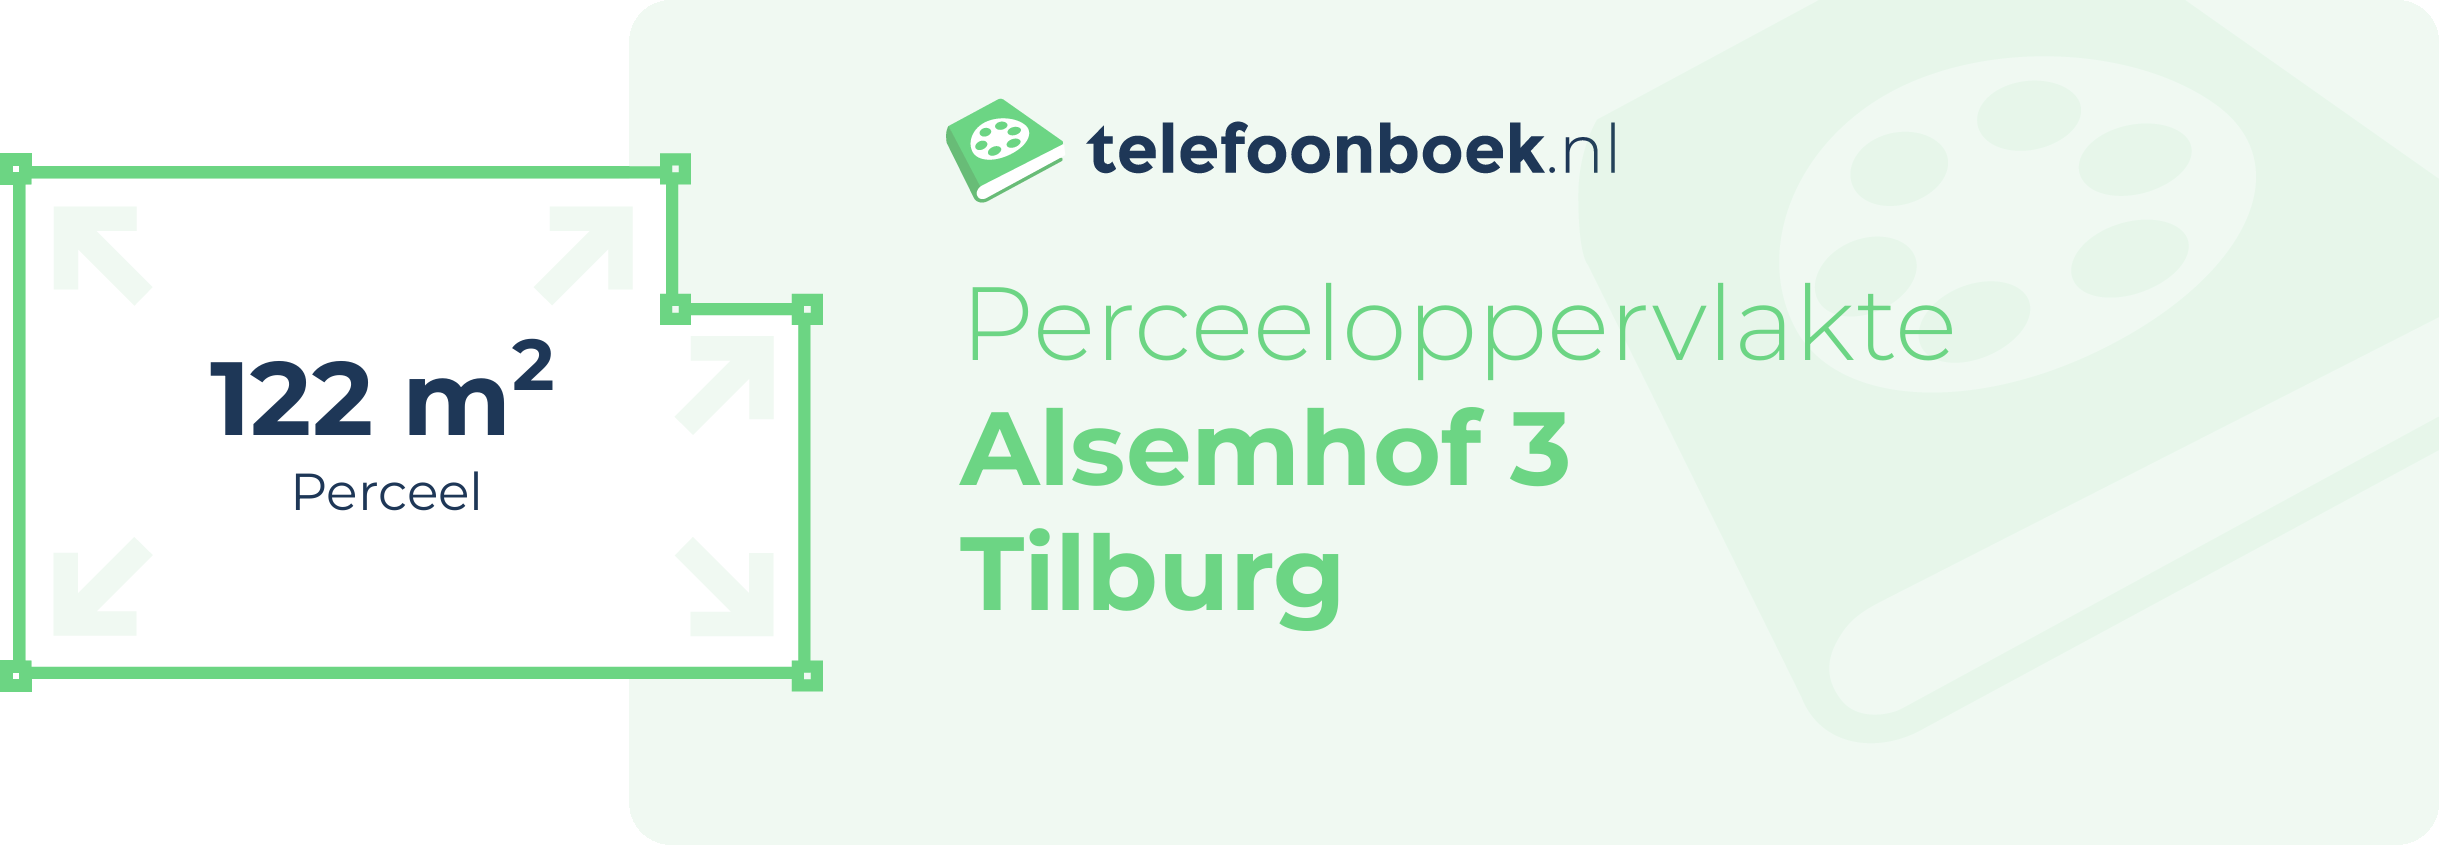 Perceeloppervlakte Alsemhof 3 Tilburg